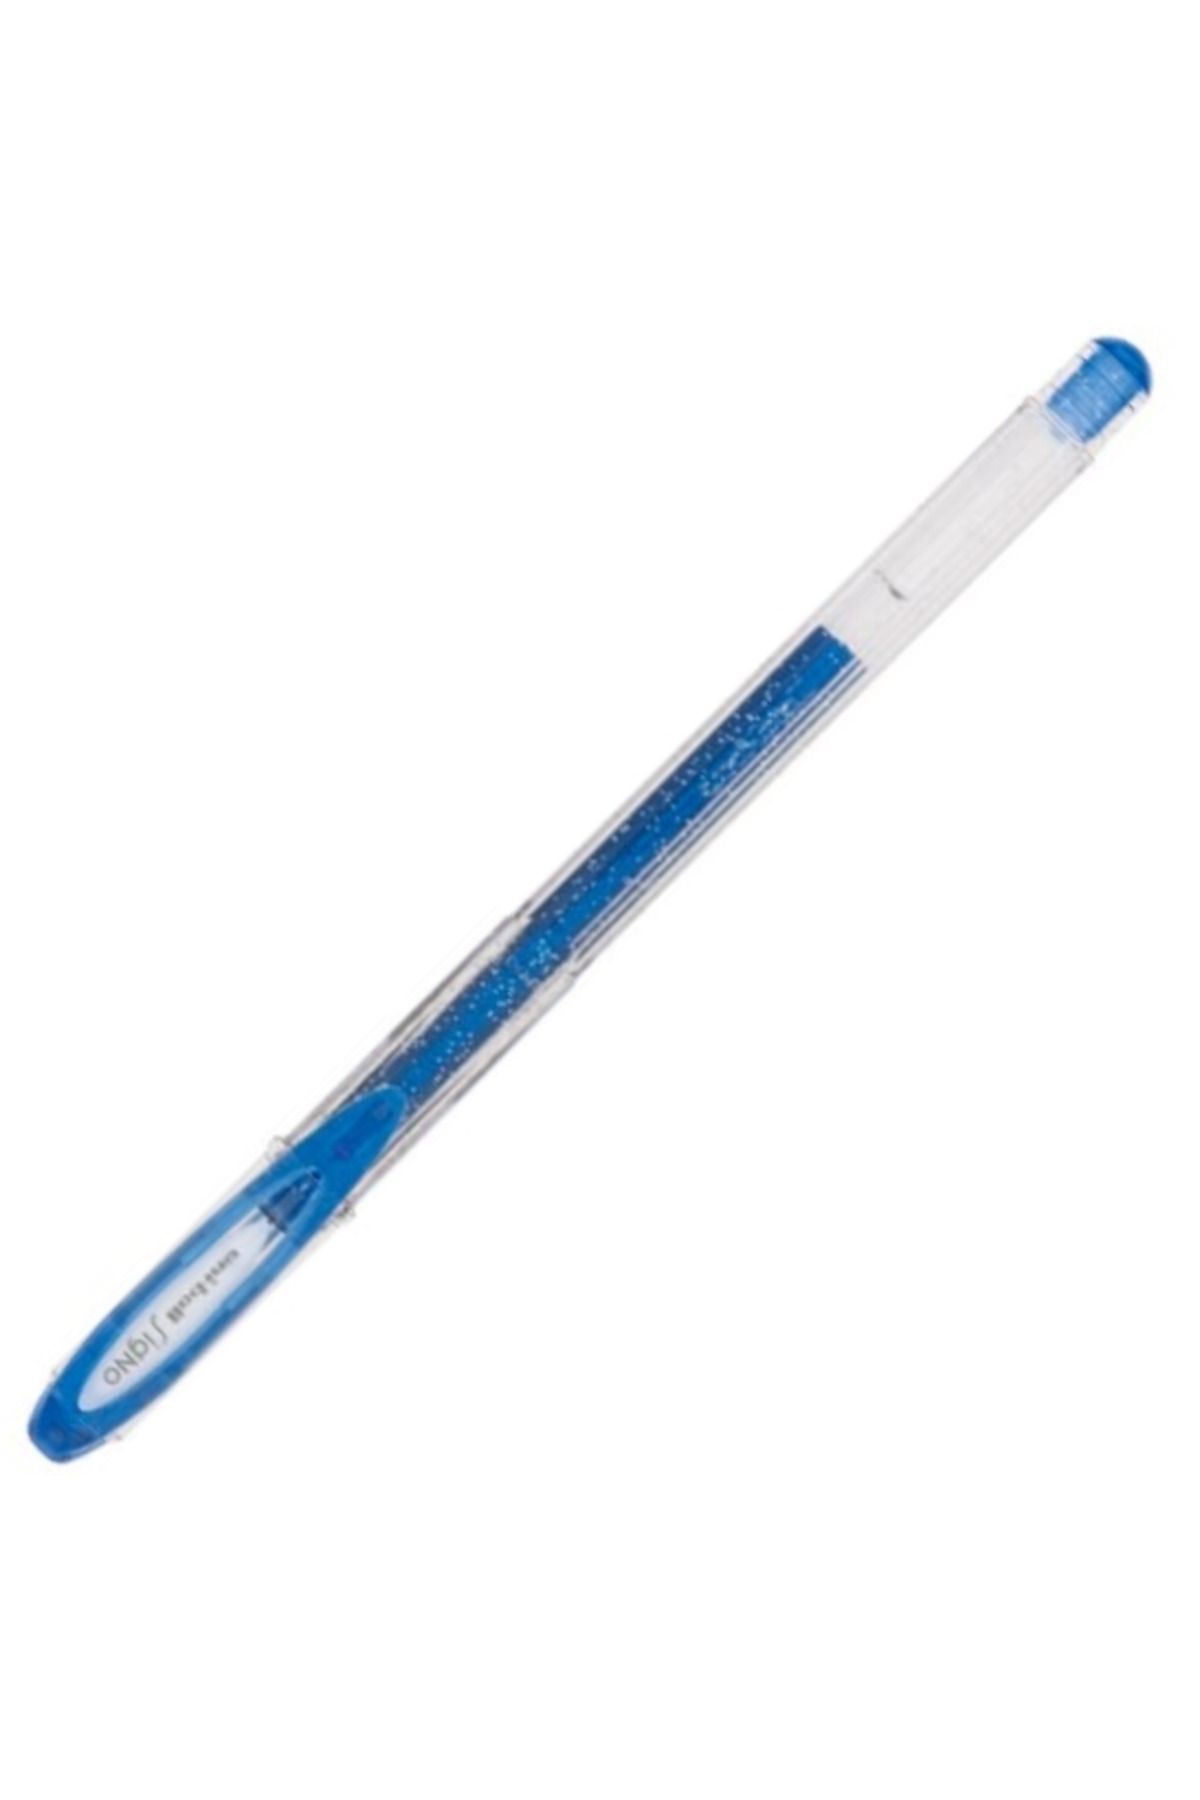 Uni Jel Kalem Sıgno Sparklıng Um-120sp 1.0 Mavi 12 Adet